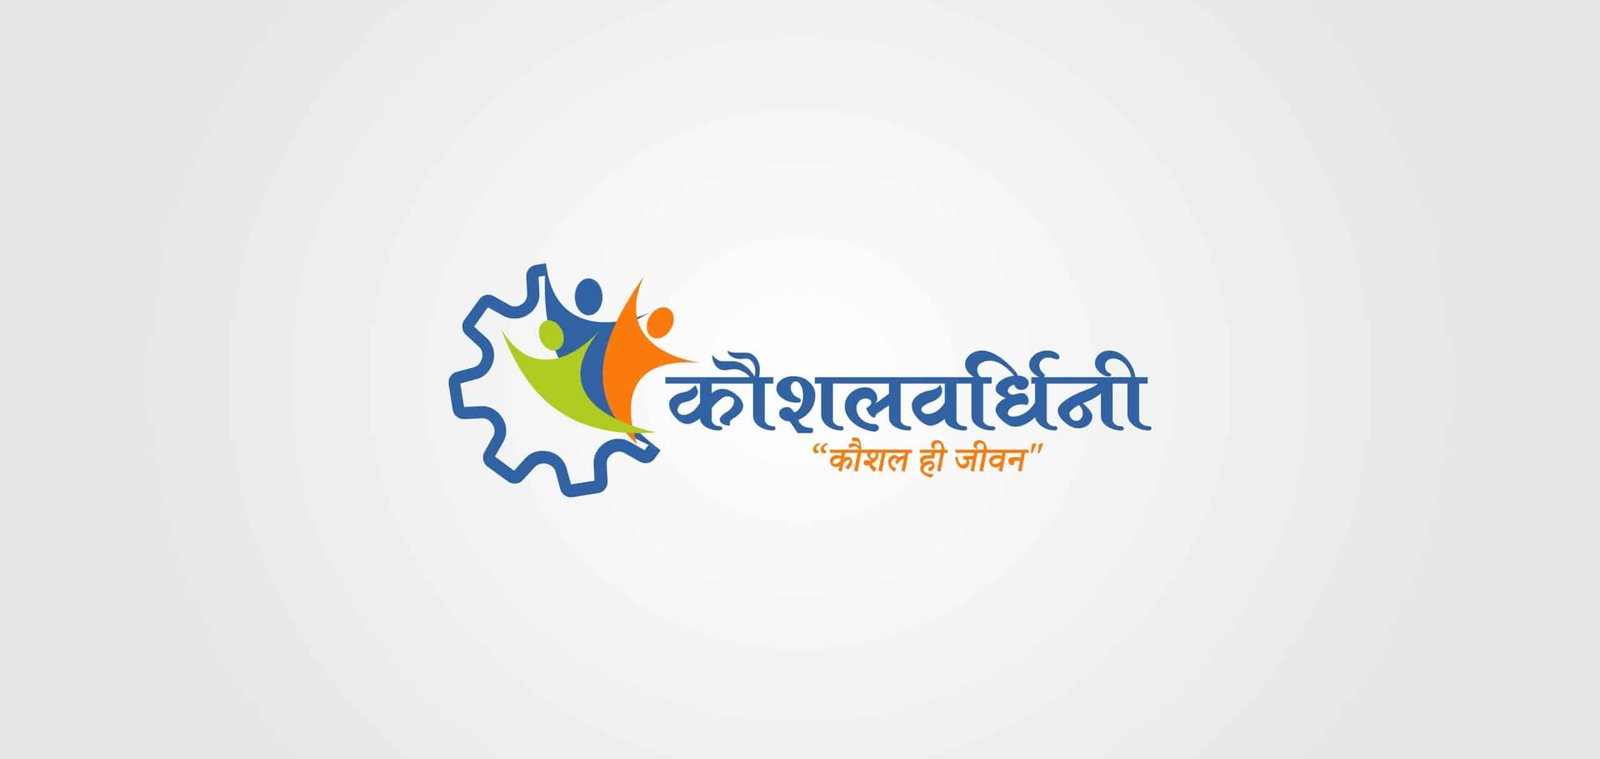 kaushalwardhini logo